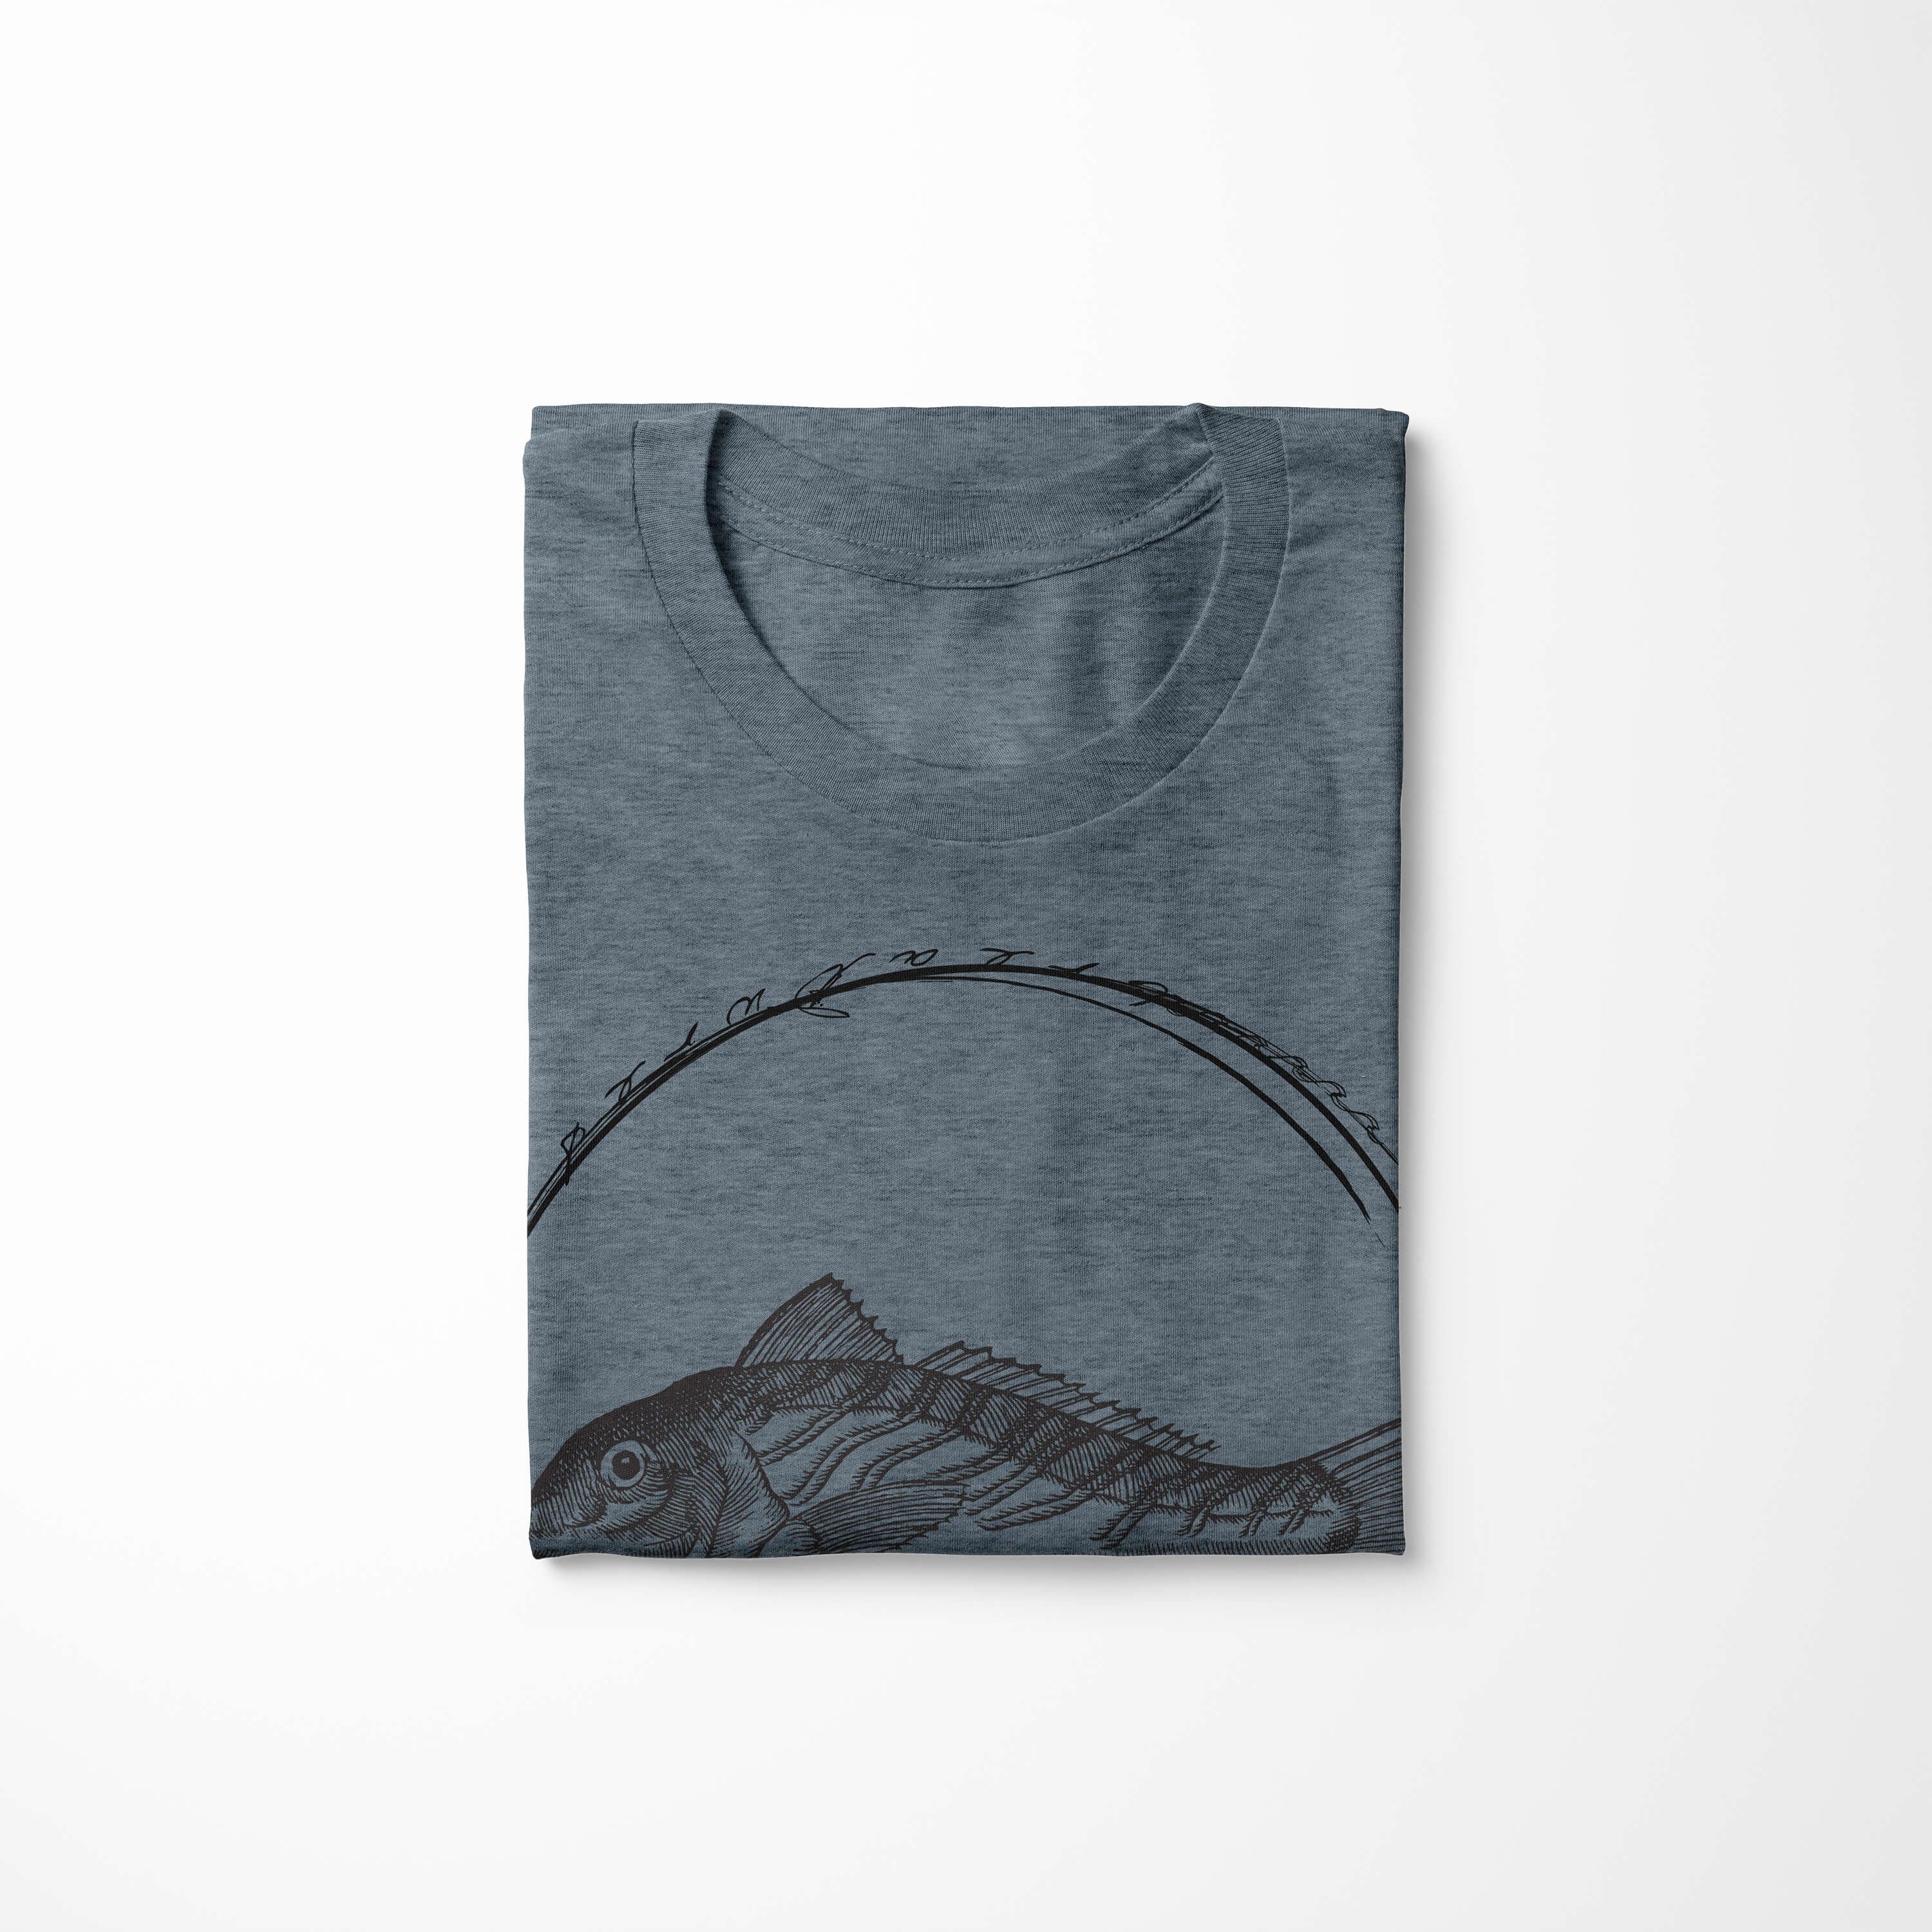 Sea feine 066 und Tiefsee Struktur Creatures, - Indigo Sinus sportlicher T-Shirt Sea Serie: T-Shirt Fische Art / Schnitt